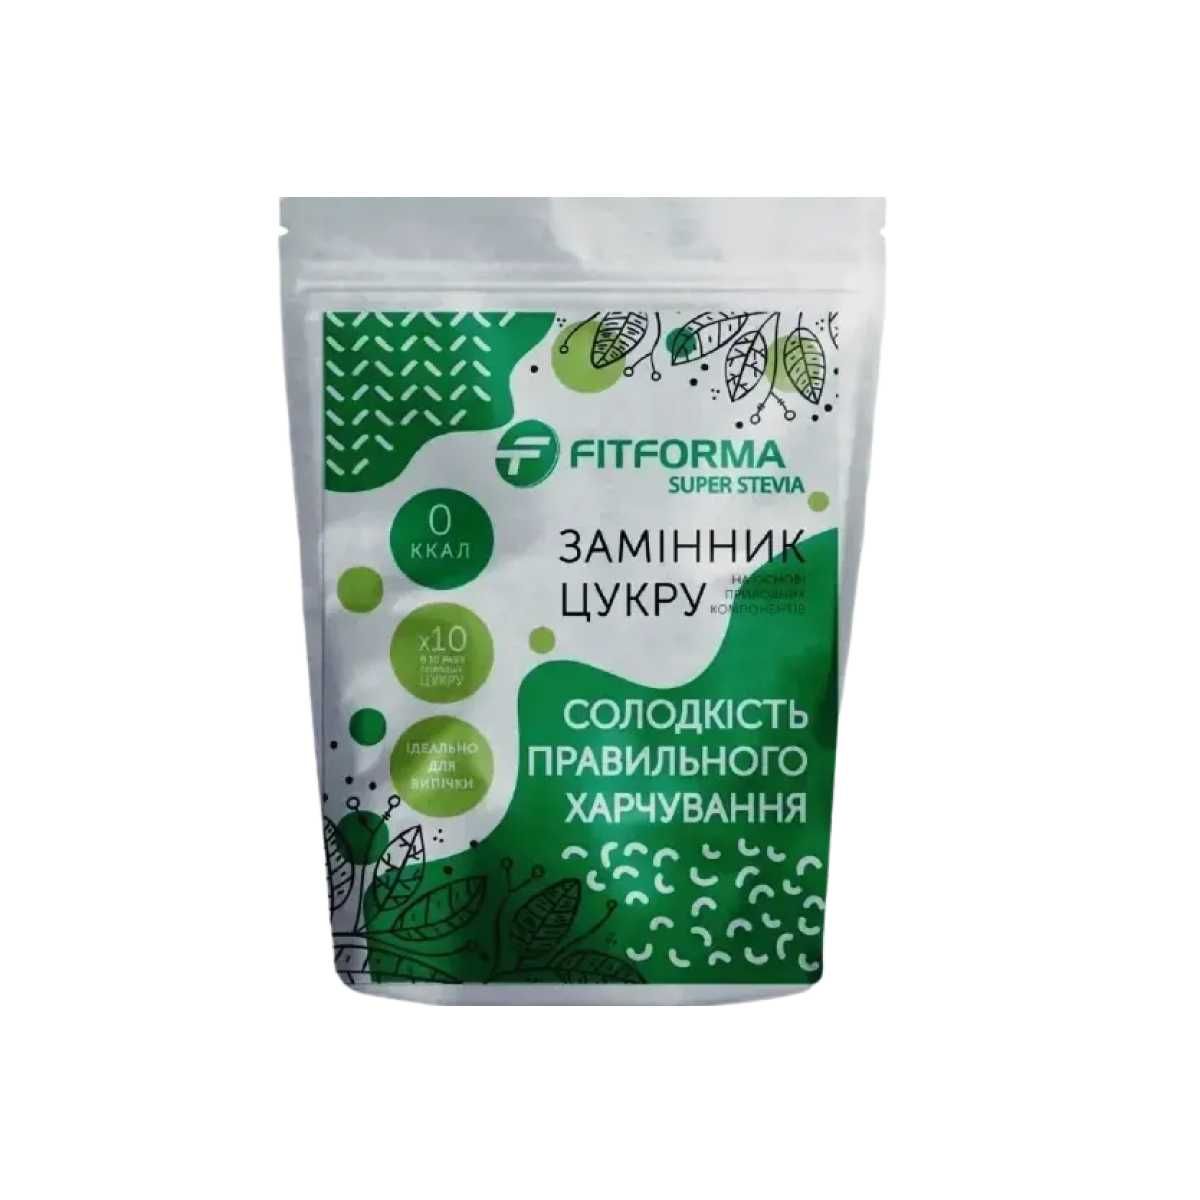 Фітформа Super Stevia стевія цукрозамінник Superstevia